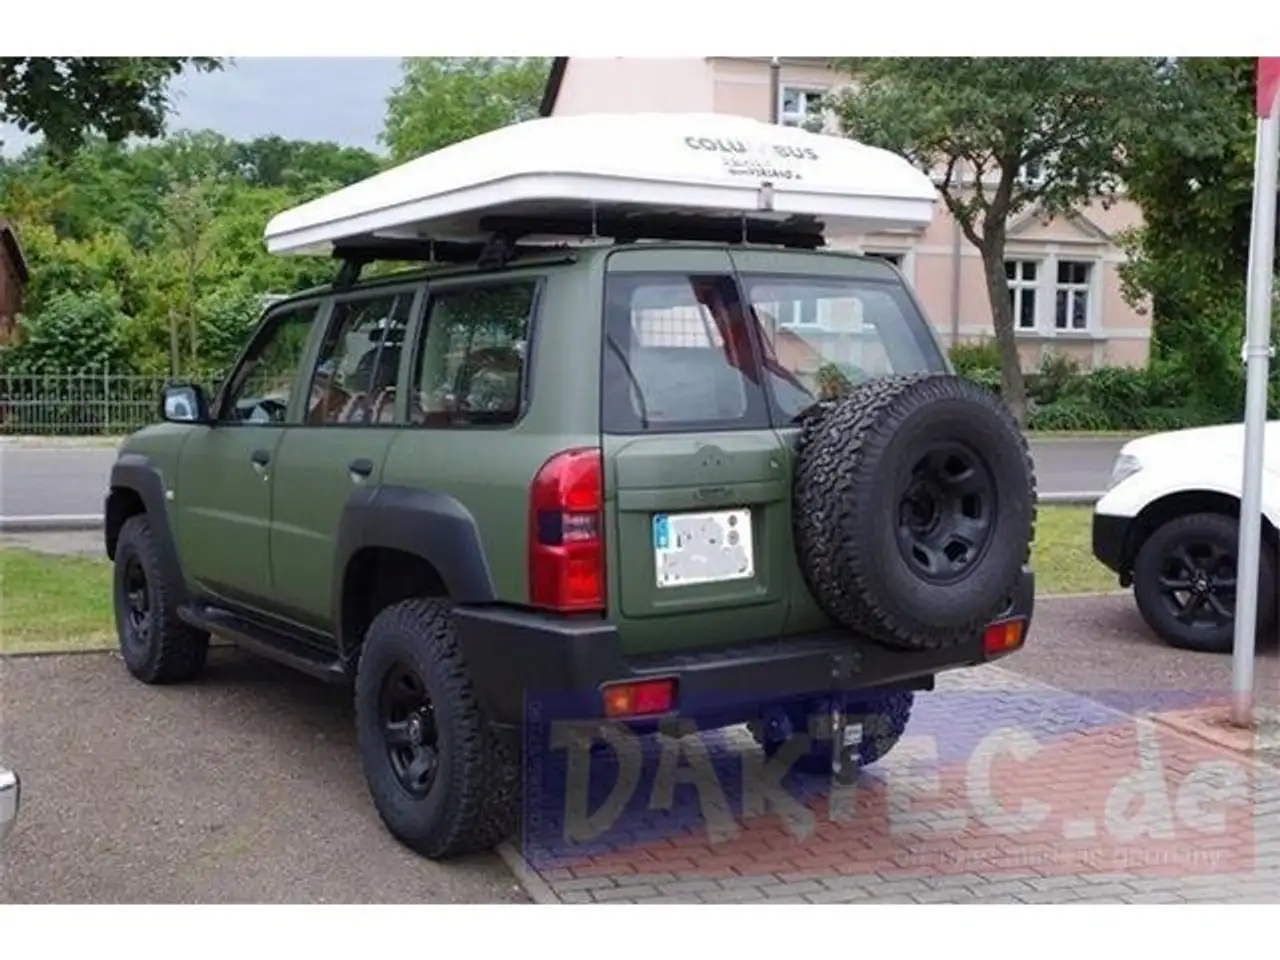 Nissan Patrol SUV/Geländewagen/Pickup in Schwarz gebraucht in Rathenow für  € 39.900,-